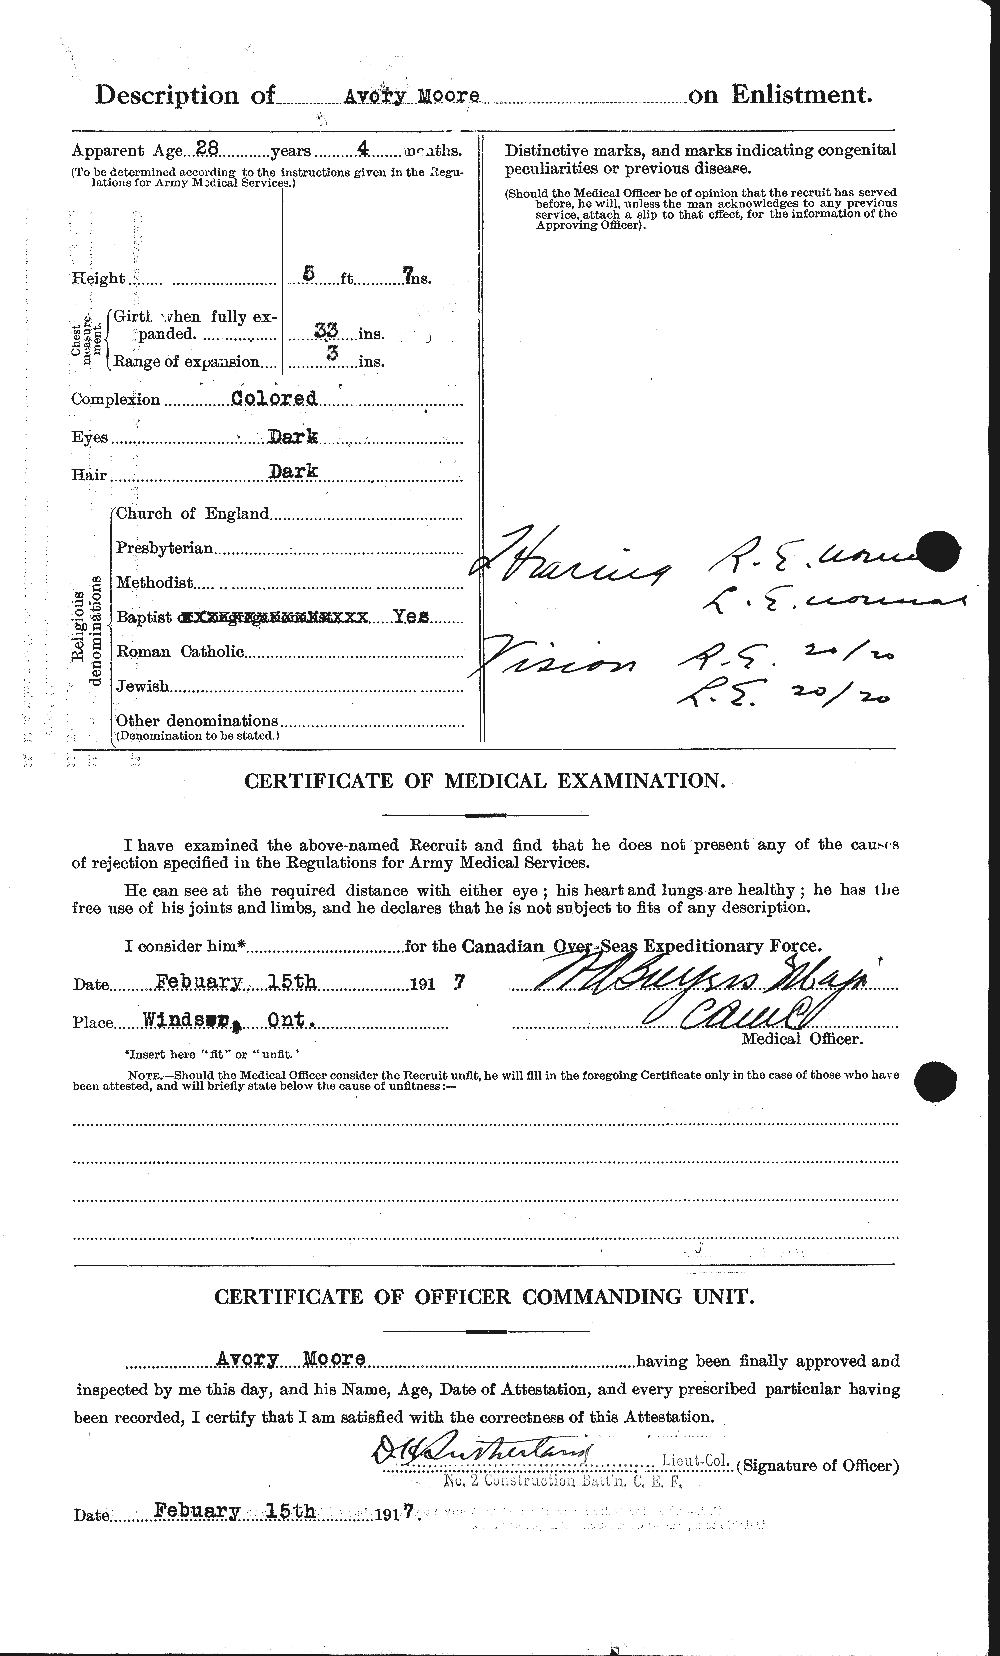 Dossiers du Personnel de la Première Guerre mondiale - CEC 506459b